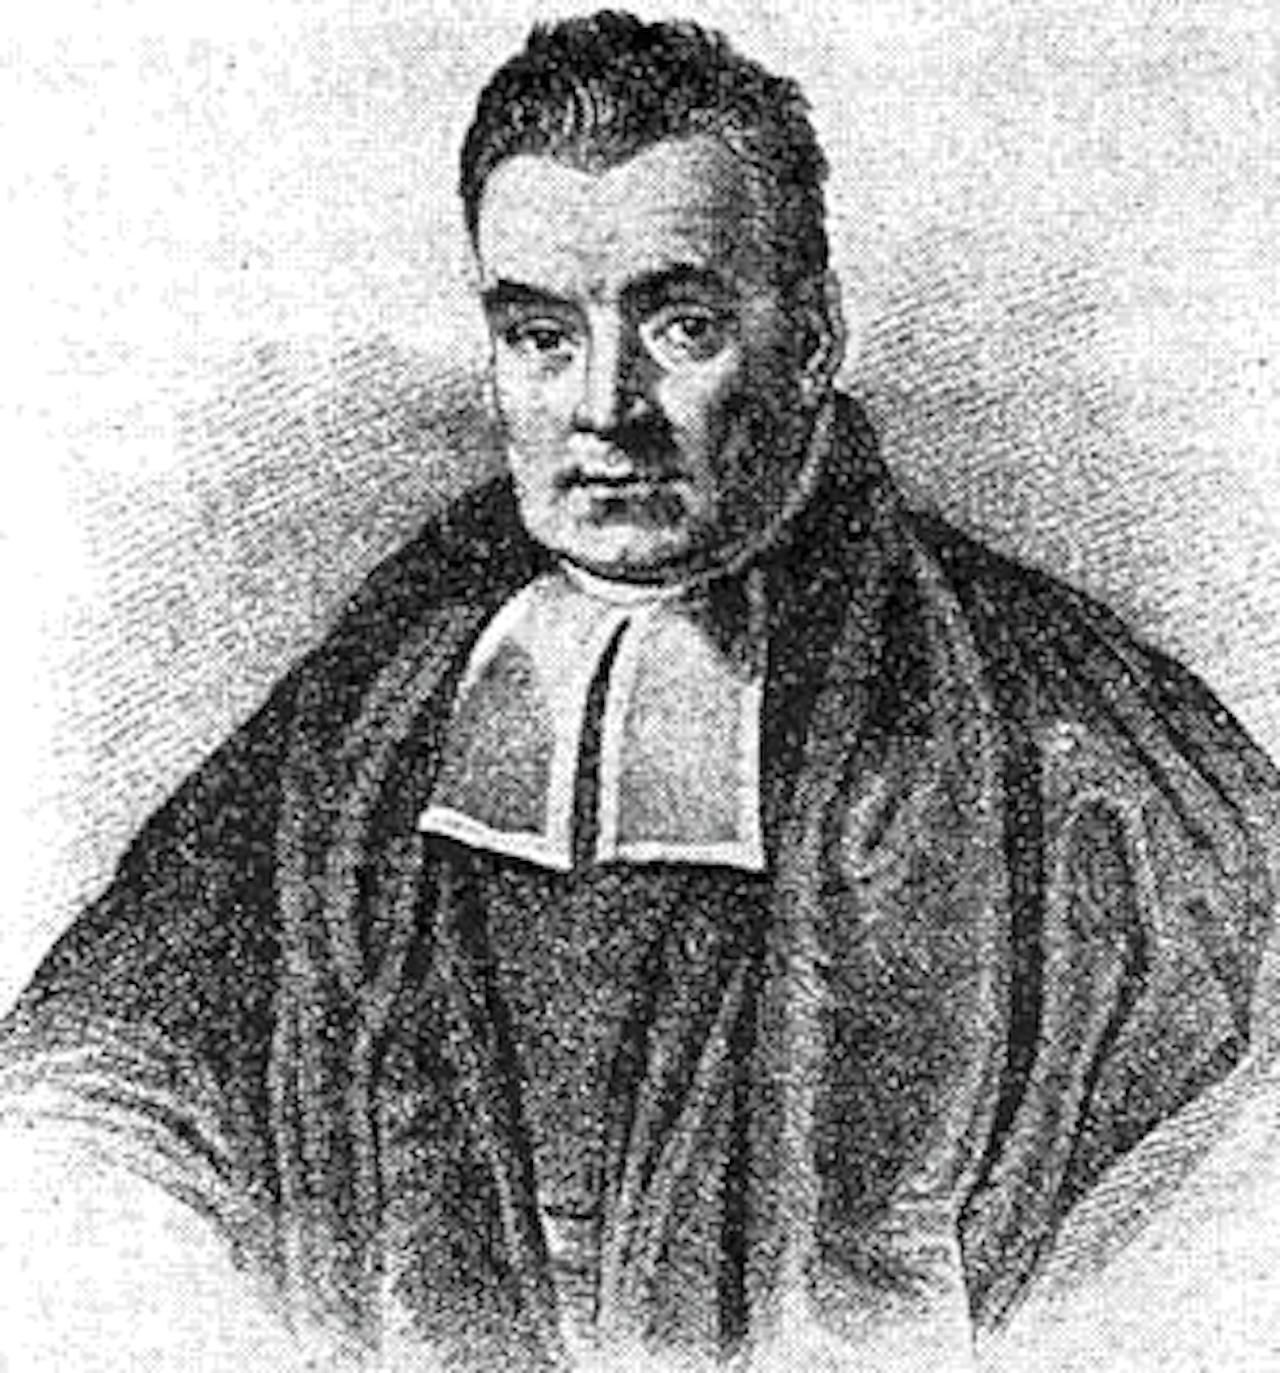 Een vermeend portret in zwart-wit van Thomas Bayes.